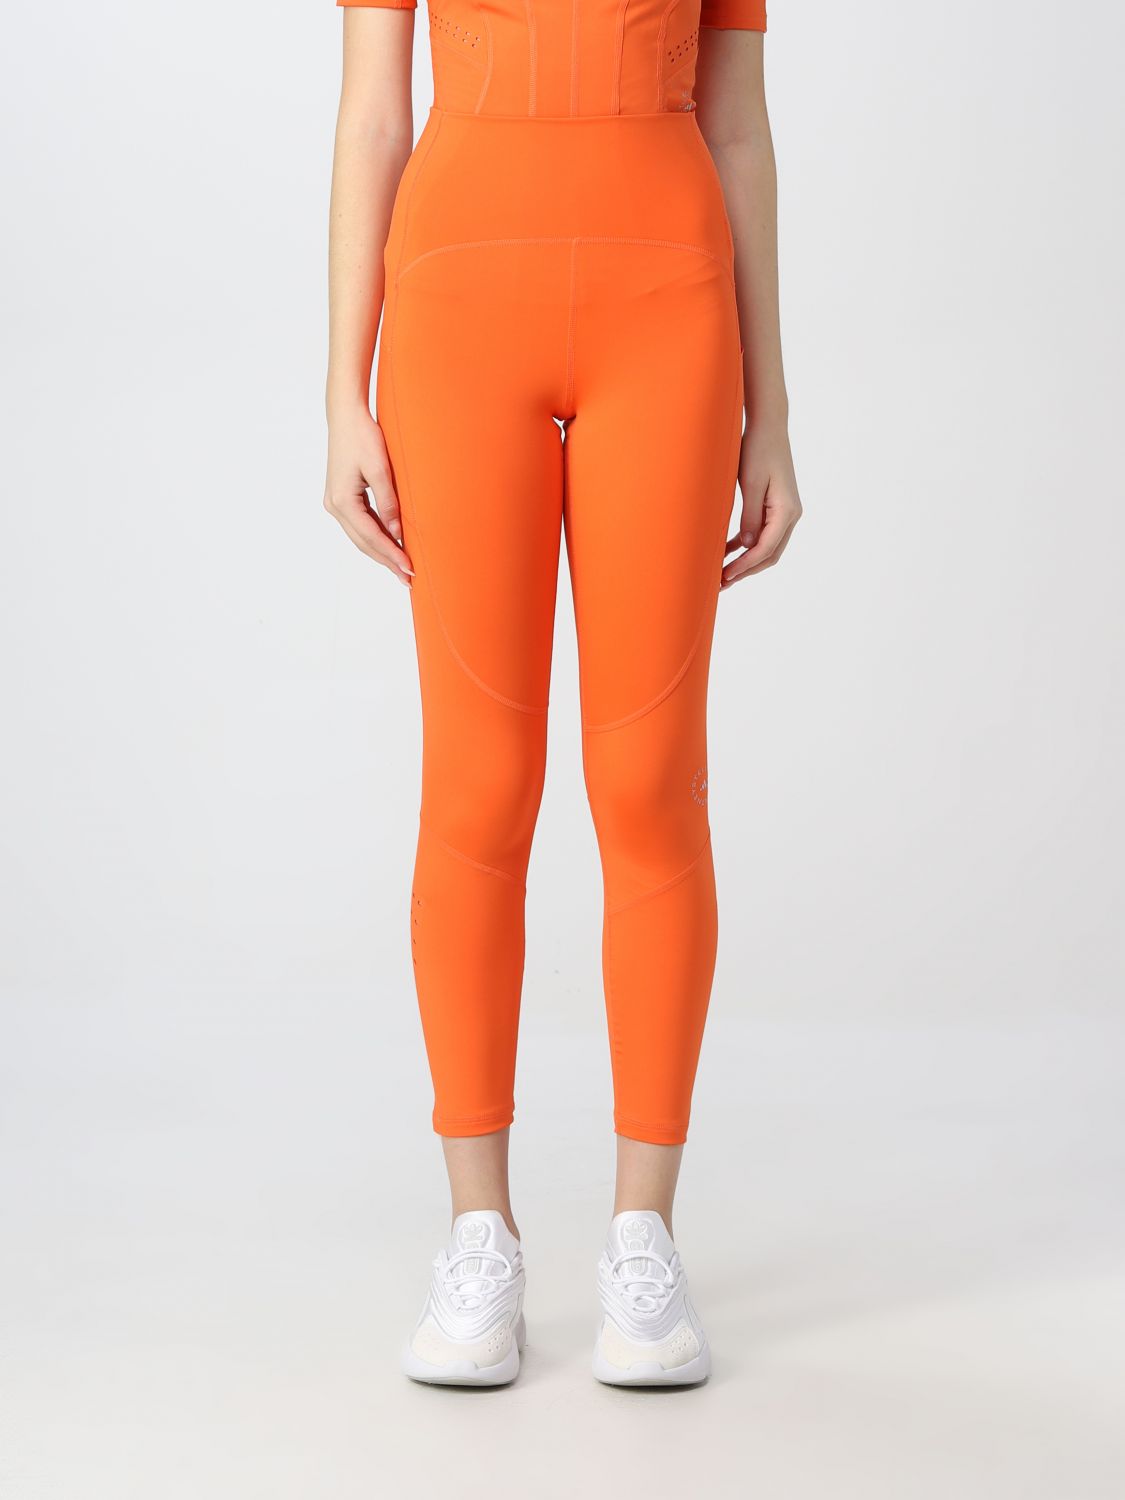 Pantalone Adidas By Stella Mccartney: Pantalone Adidas By Stella Mccartney donna arancione 1